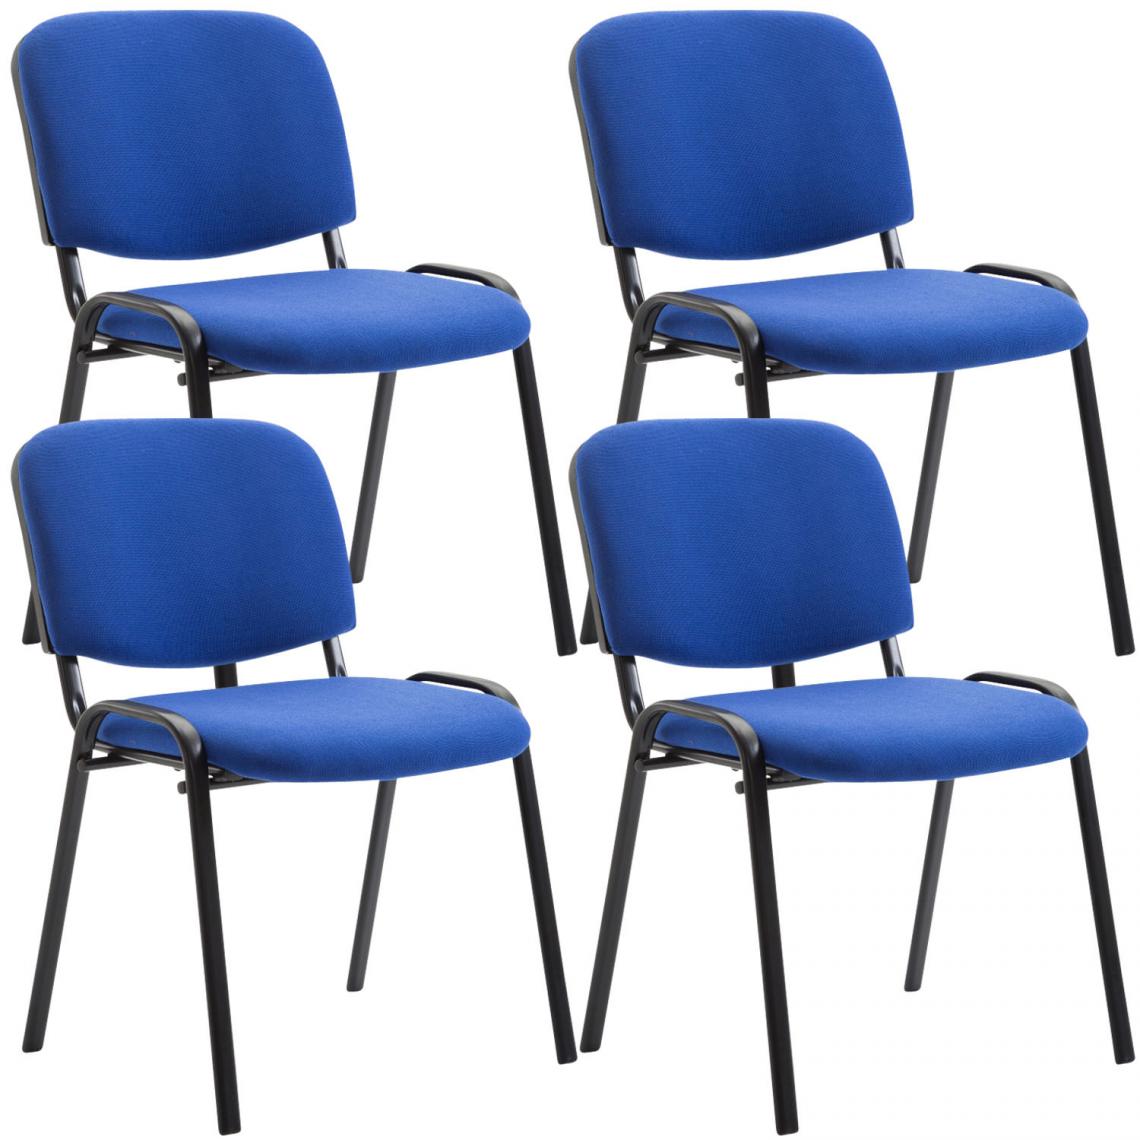 Icaverne - Admirable Ensemble de 4 chaises visiteur en tissu collection Bamako couleur bleu - Chaises